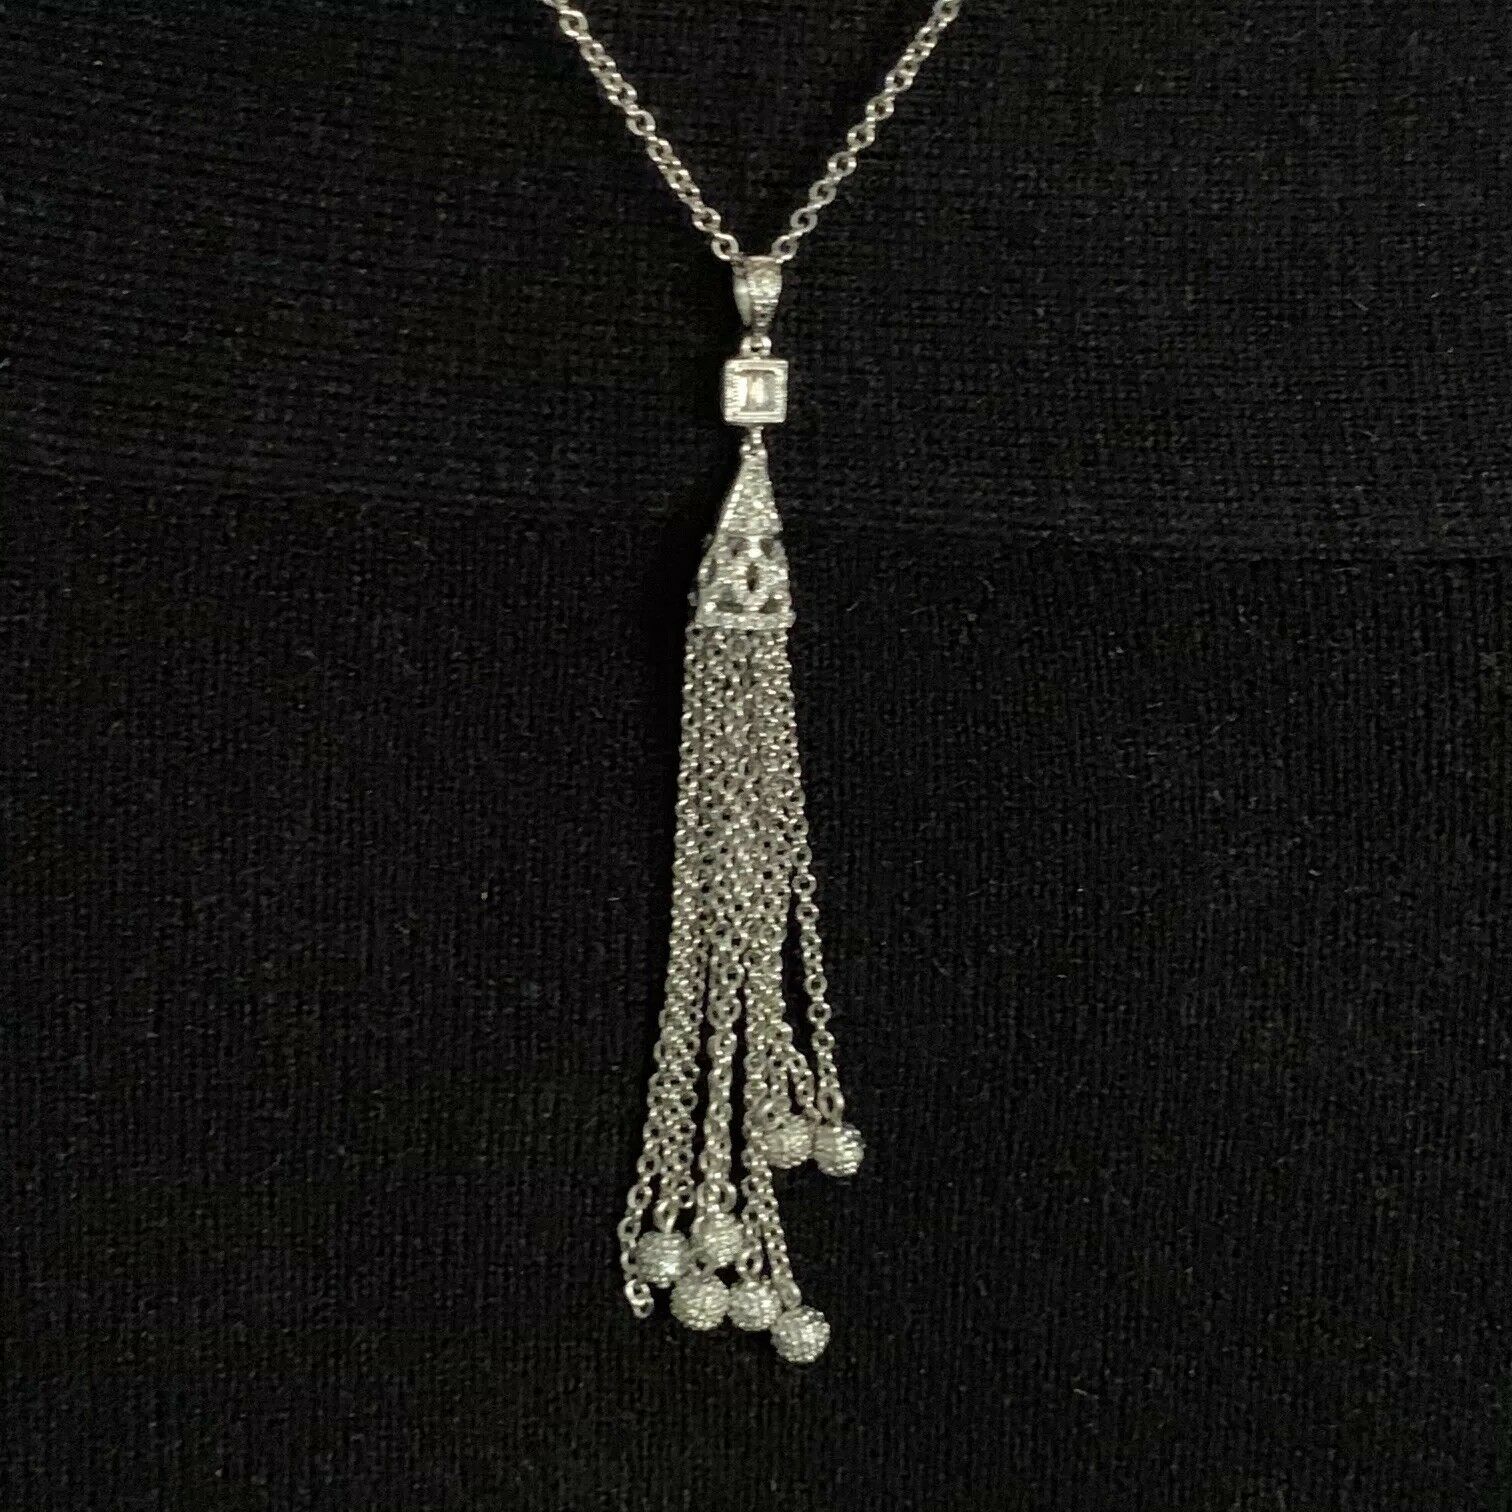 Diamond Necklace 18k Gold Tassel Pendant 19" Women Certified $3,000 820700 - Certified Estate Jewelry